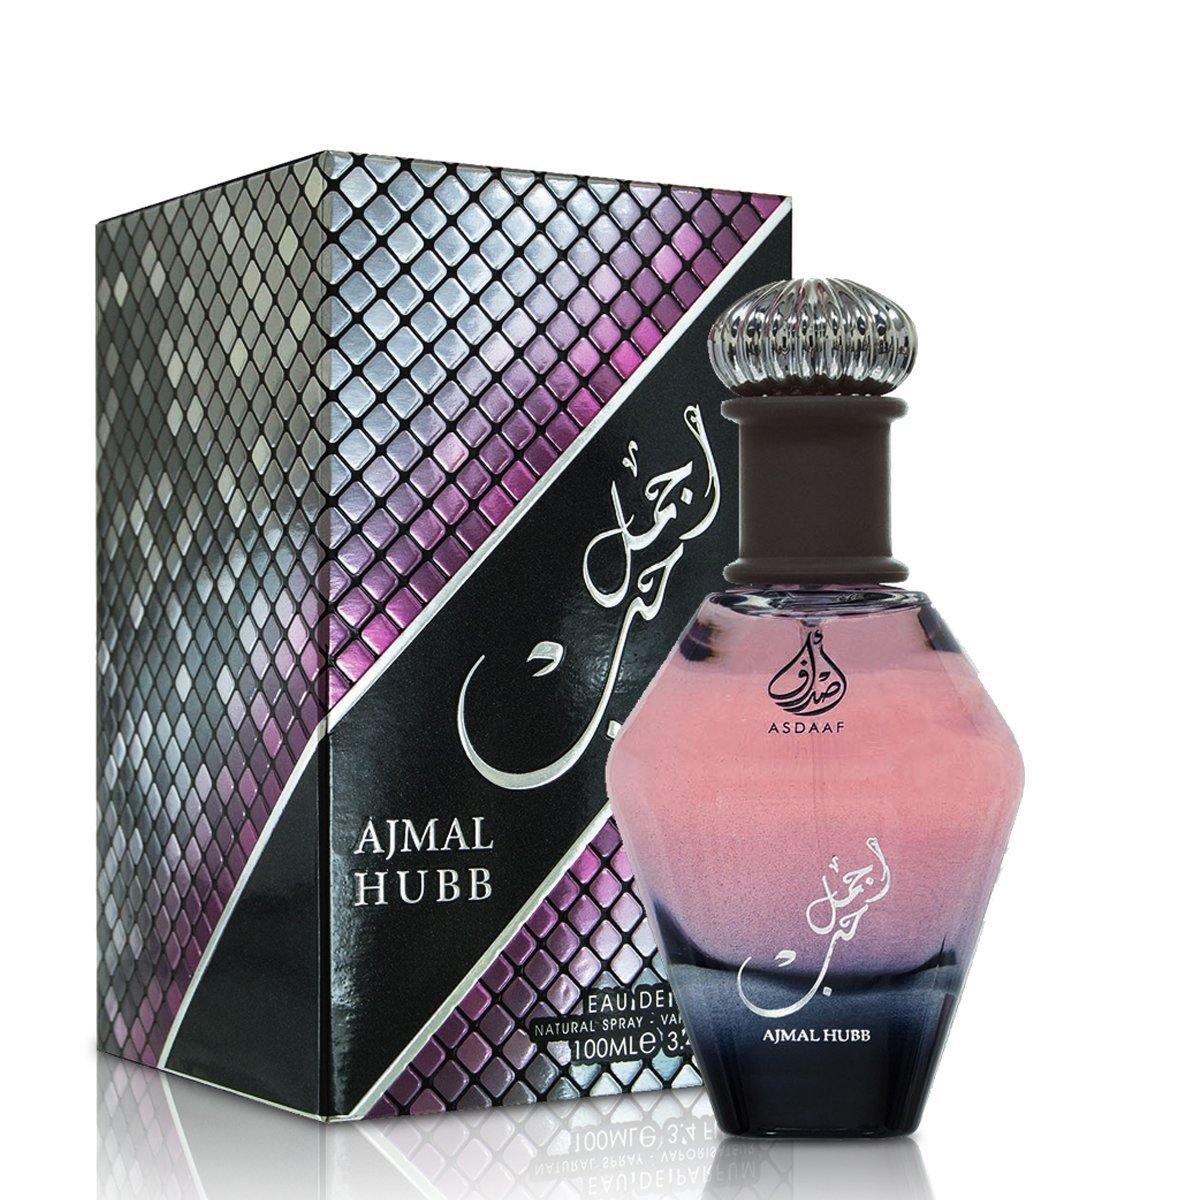 100 ml Eau de Parfum Asdaaf Ajmal Hubb cu Arome  lemnoase și Iasomie pentru Femei - Galeria de Bijuterii